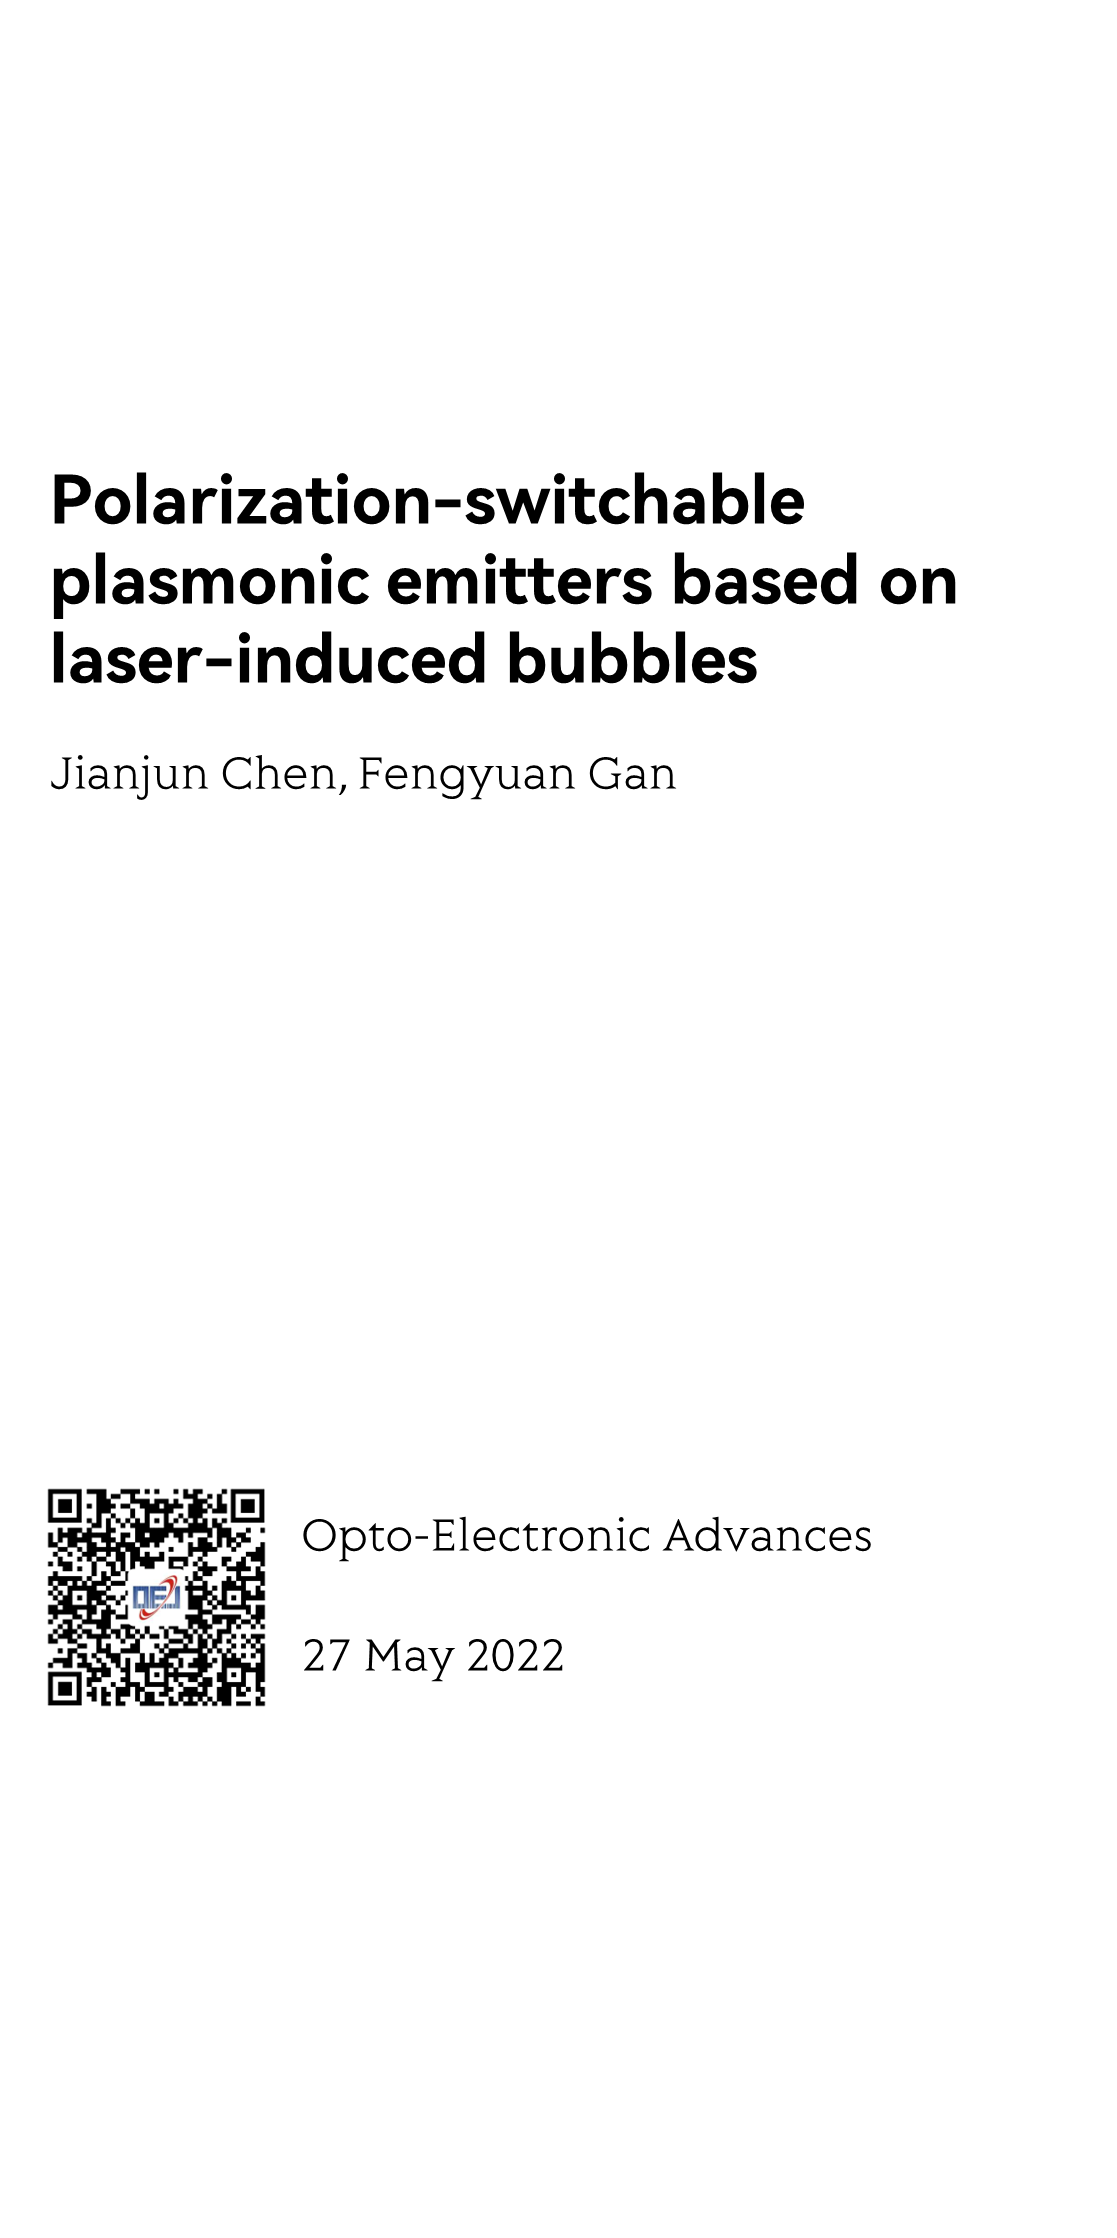 Polarization-switchable plasmonic emitters based on laser-induced bubbles_1